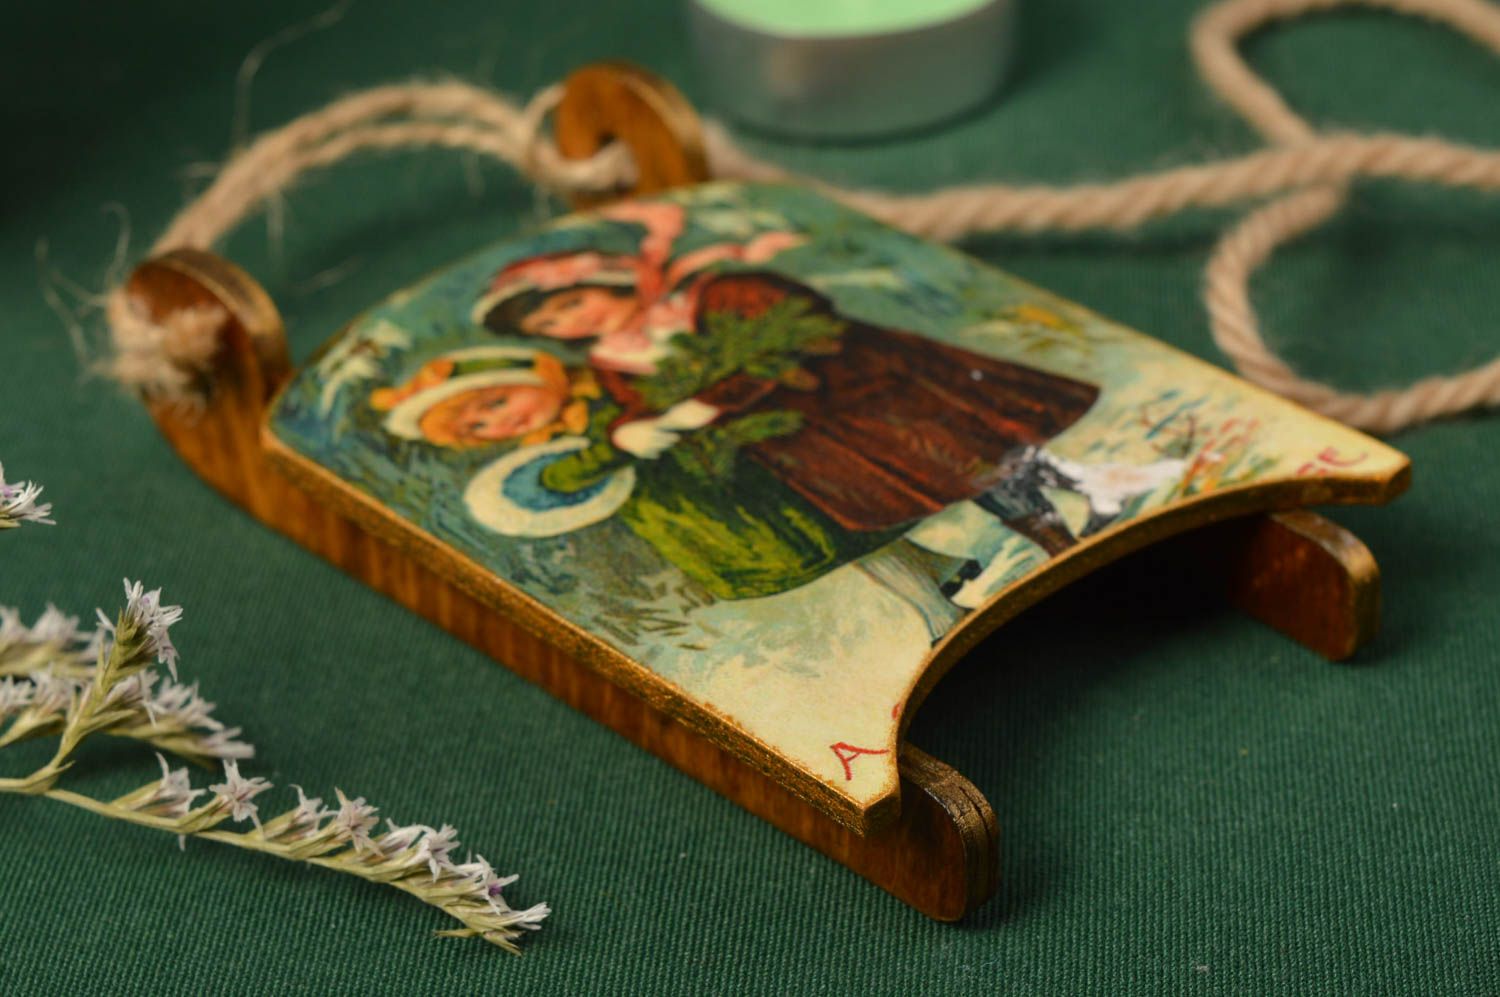 Juguete de Navidad hecho a mano de madera elemento decorativo souvenir original foto 1